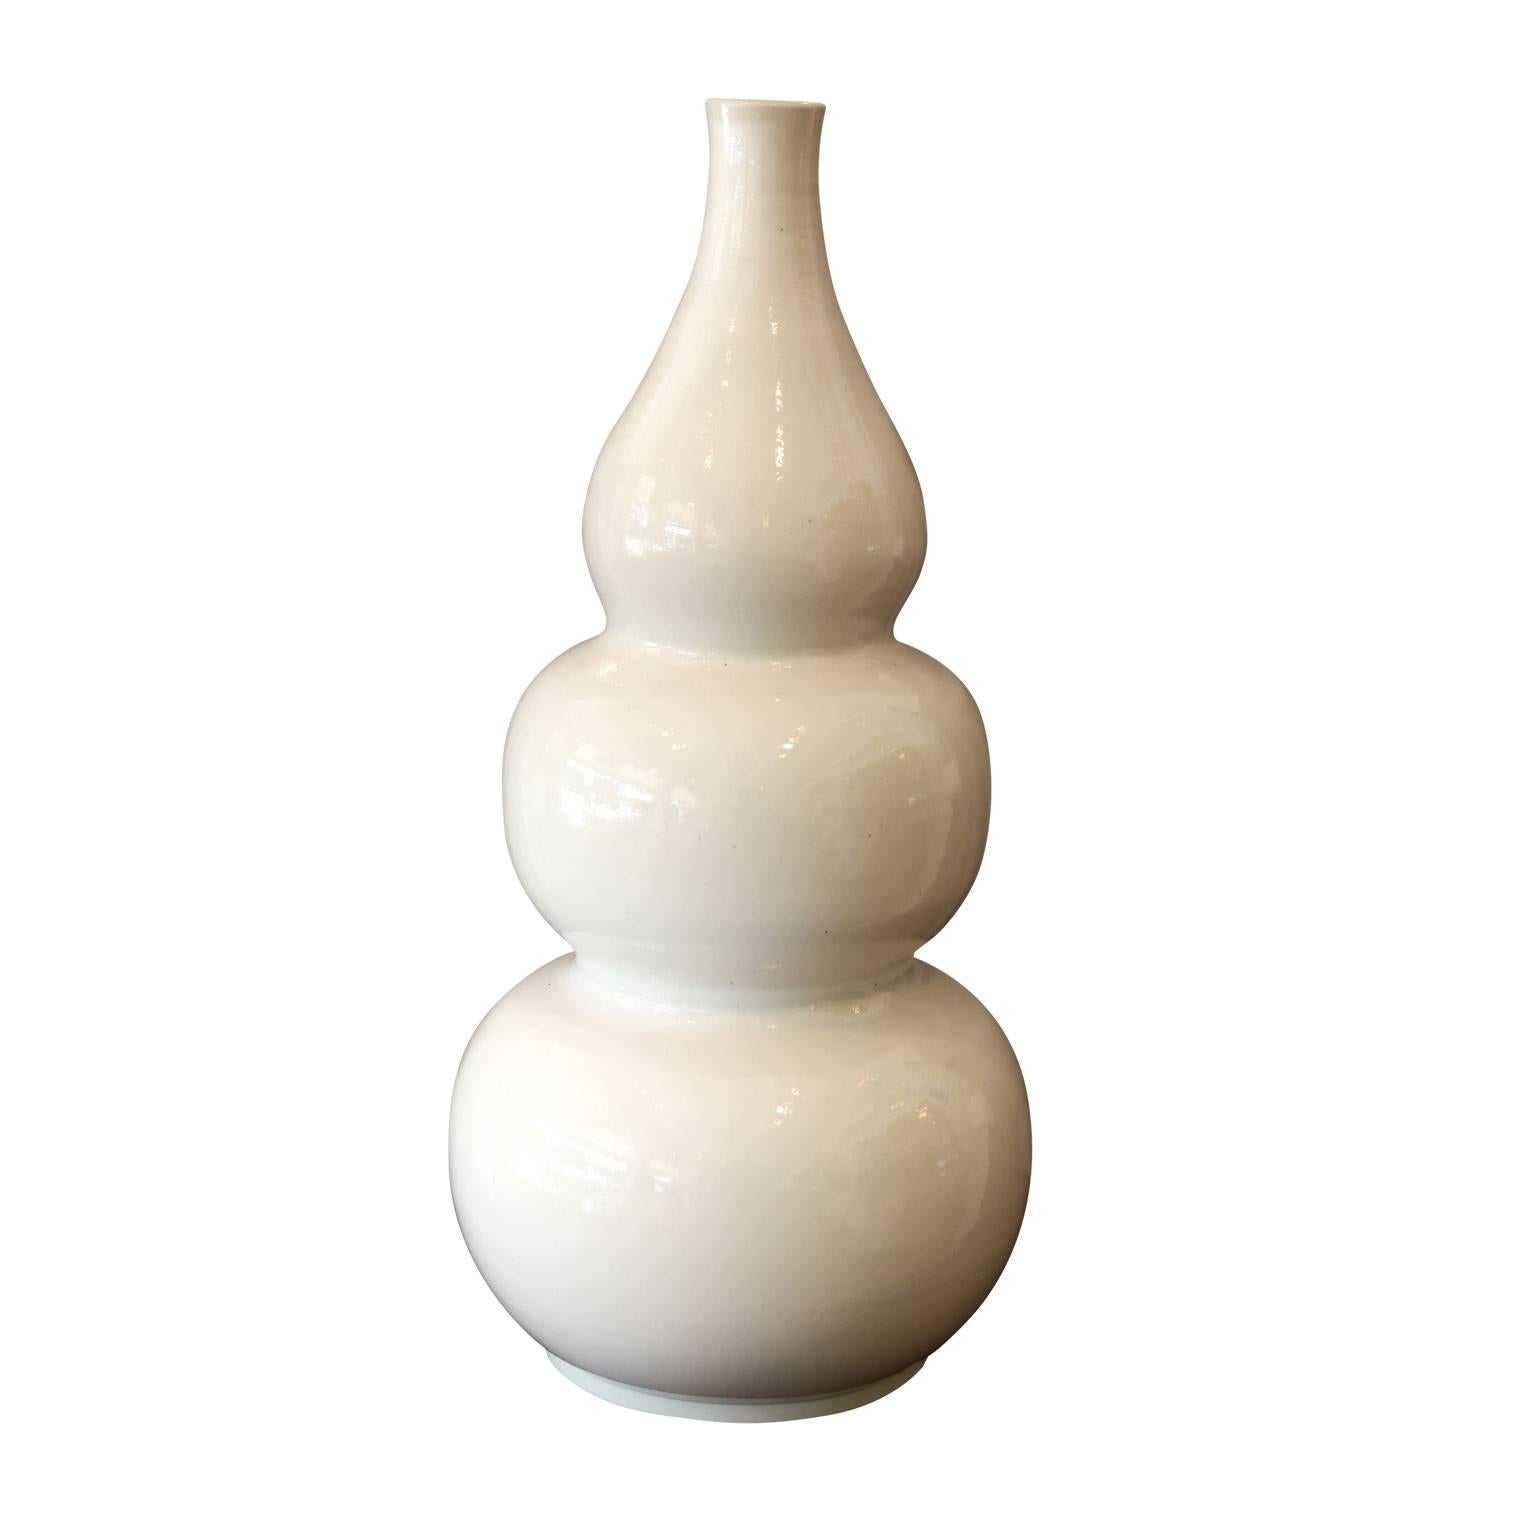 Deux importants vases vintage en forme de gourde blanche, vers 1960-1980. Belle forme robuste de gourde avec une riche finition glacée laiteuse et une magnifique patine subtile. Vendues individuellement au prix de 2 300 $ chacune.